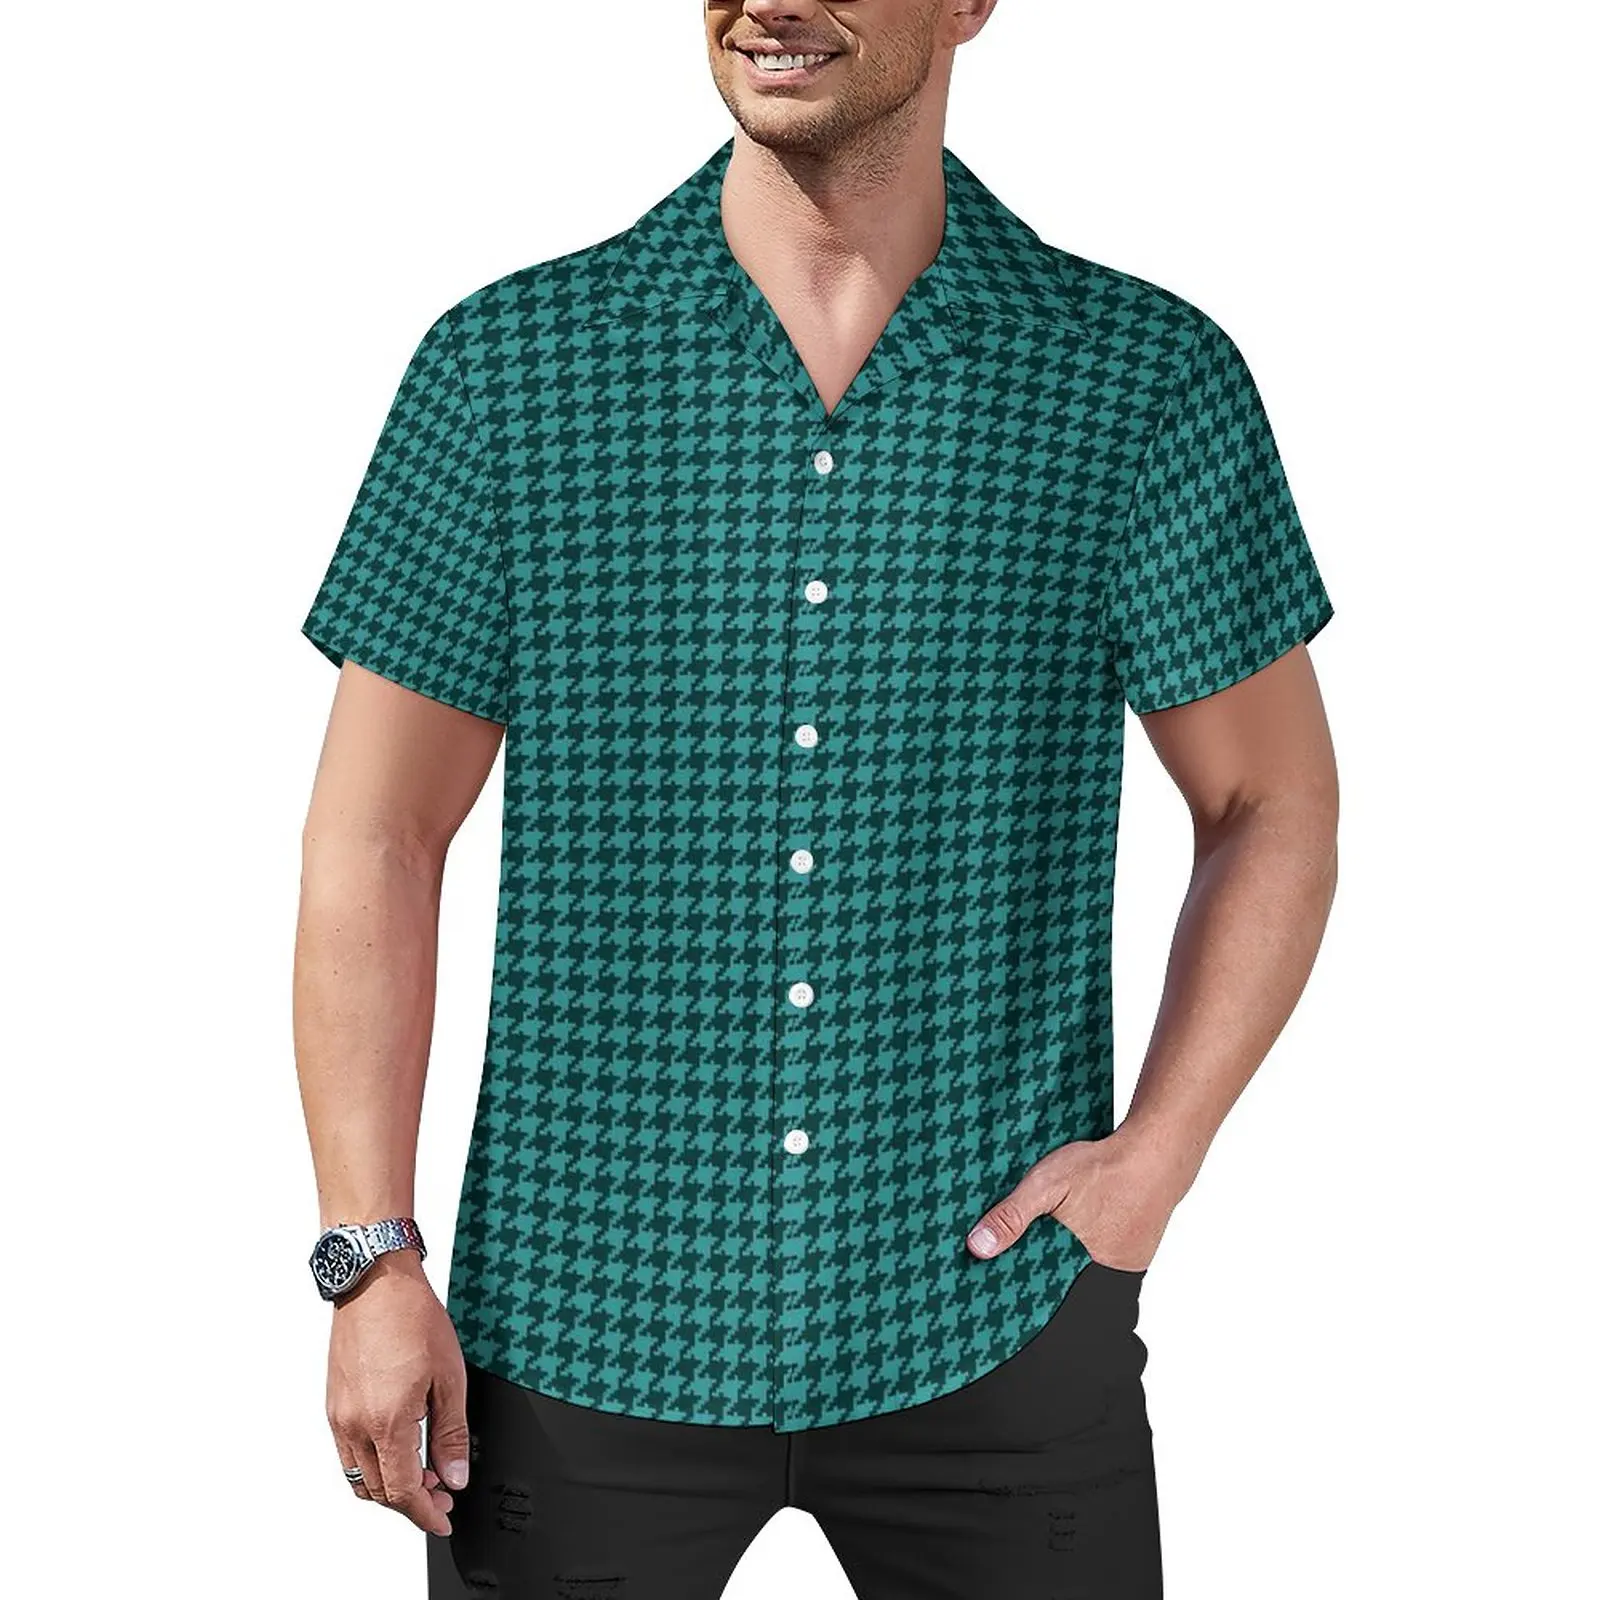 

Пляжная рубашка в стиле ретро с рисунком «гусиные лапки», зеленые и черные Гавайские повседневные рубашки, мужские блузки Y2K с коротким рукавом, одежда с графическим рисунком, 3XL, 4XL